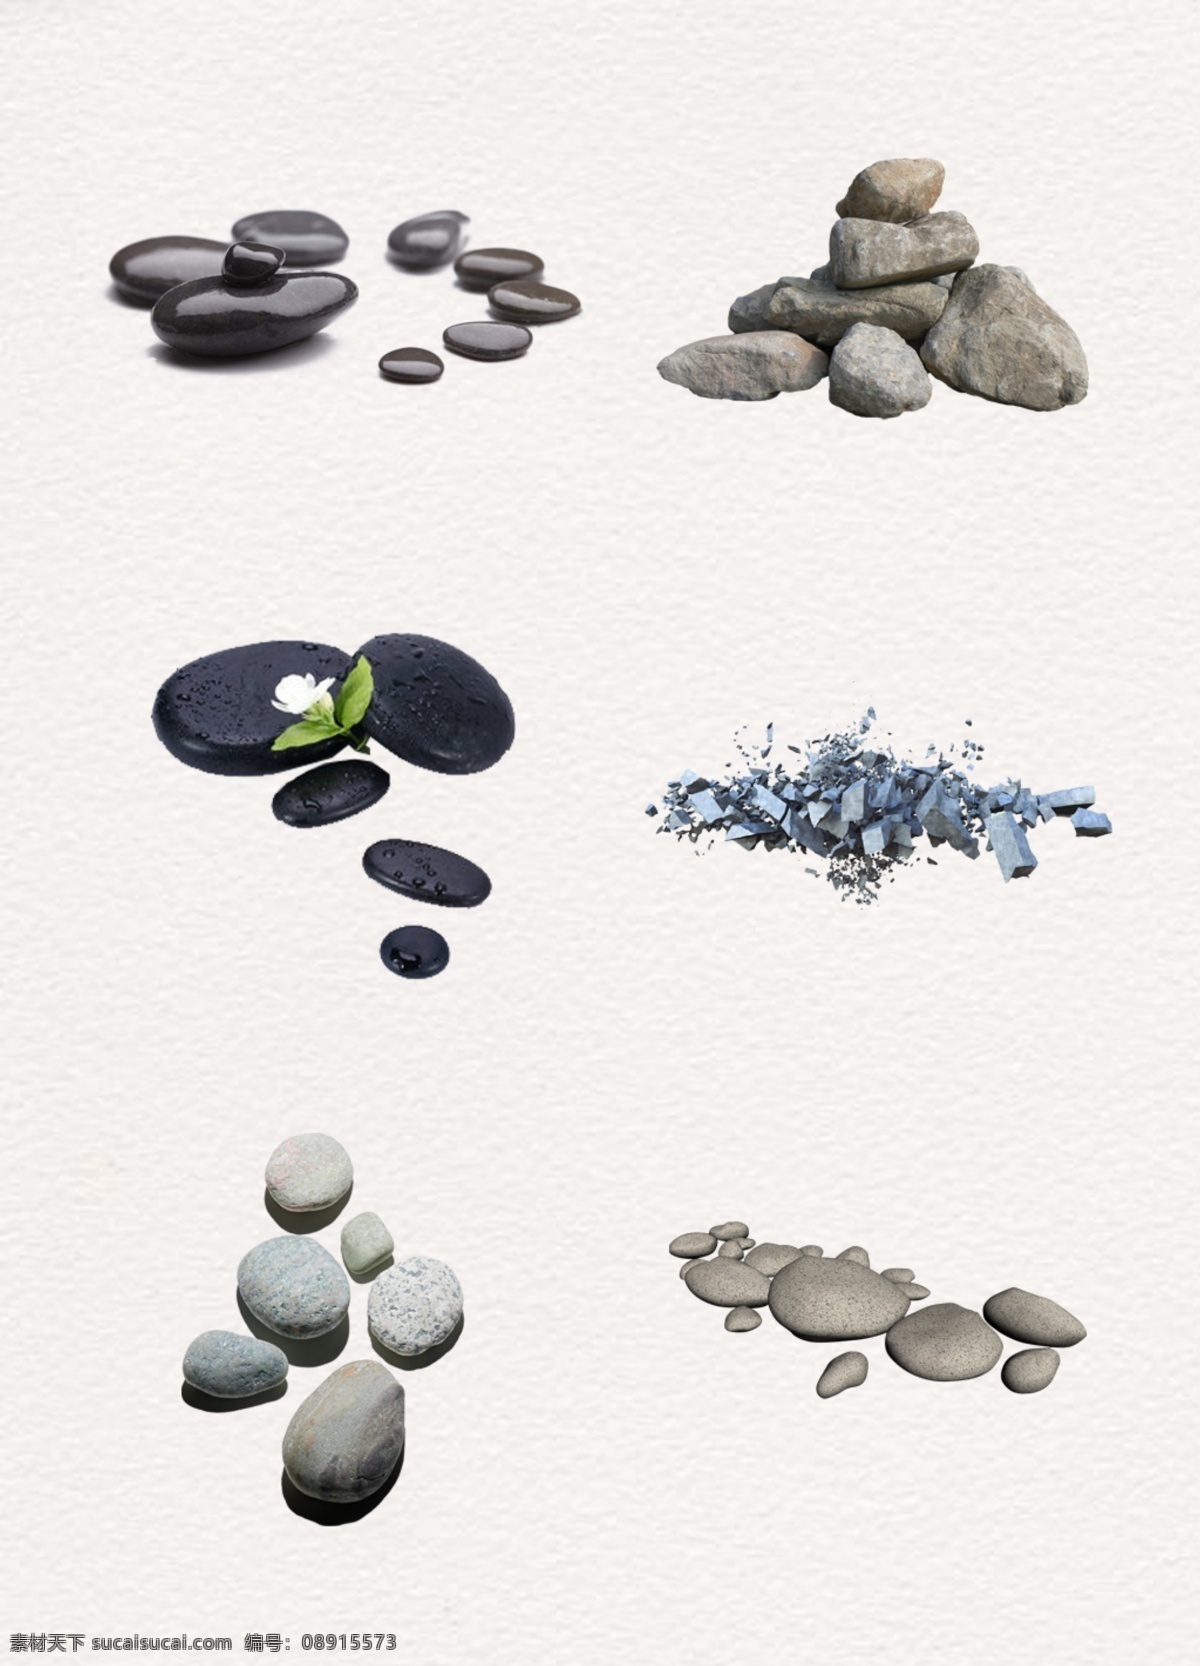 堆 海边 河边 石块 集合 一堆石头 圆形石头 喷溅石头 鹅卵石 石头 一群石头